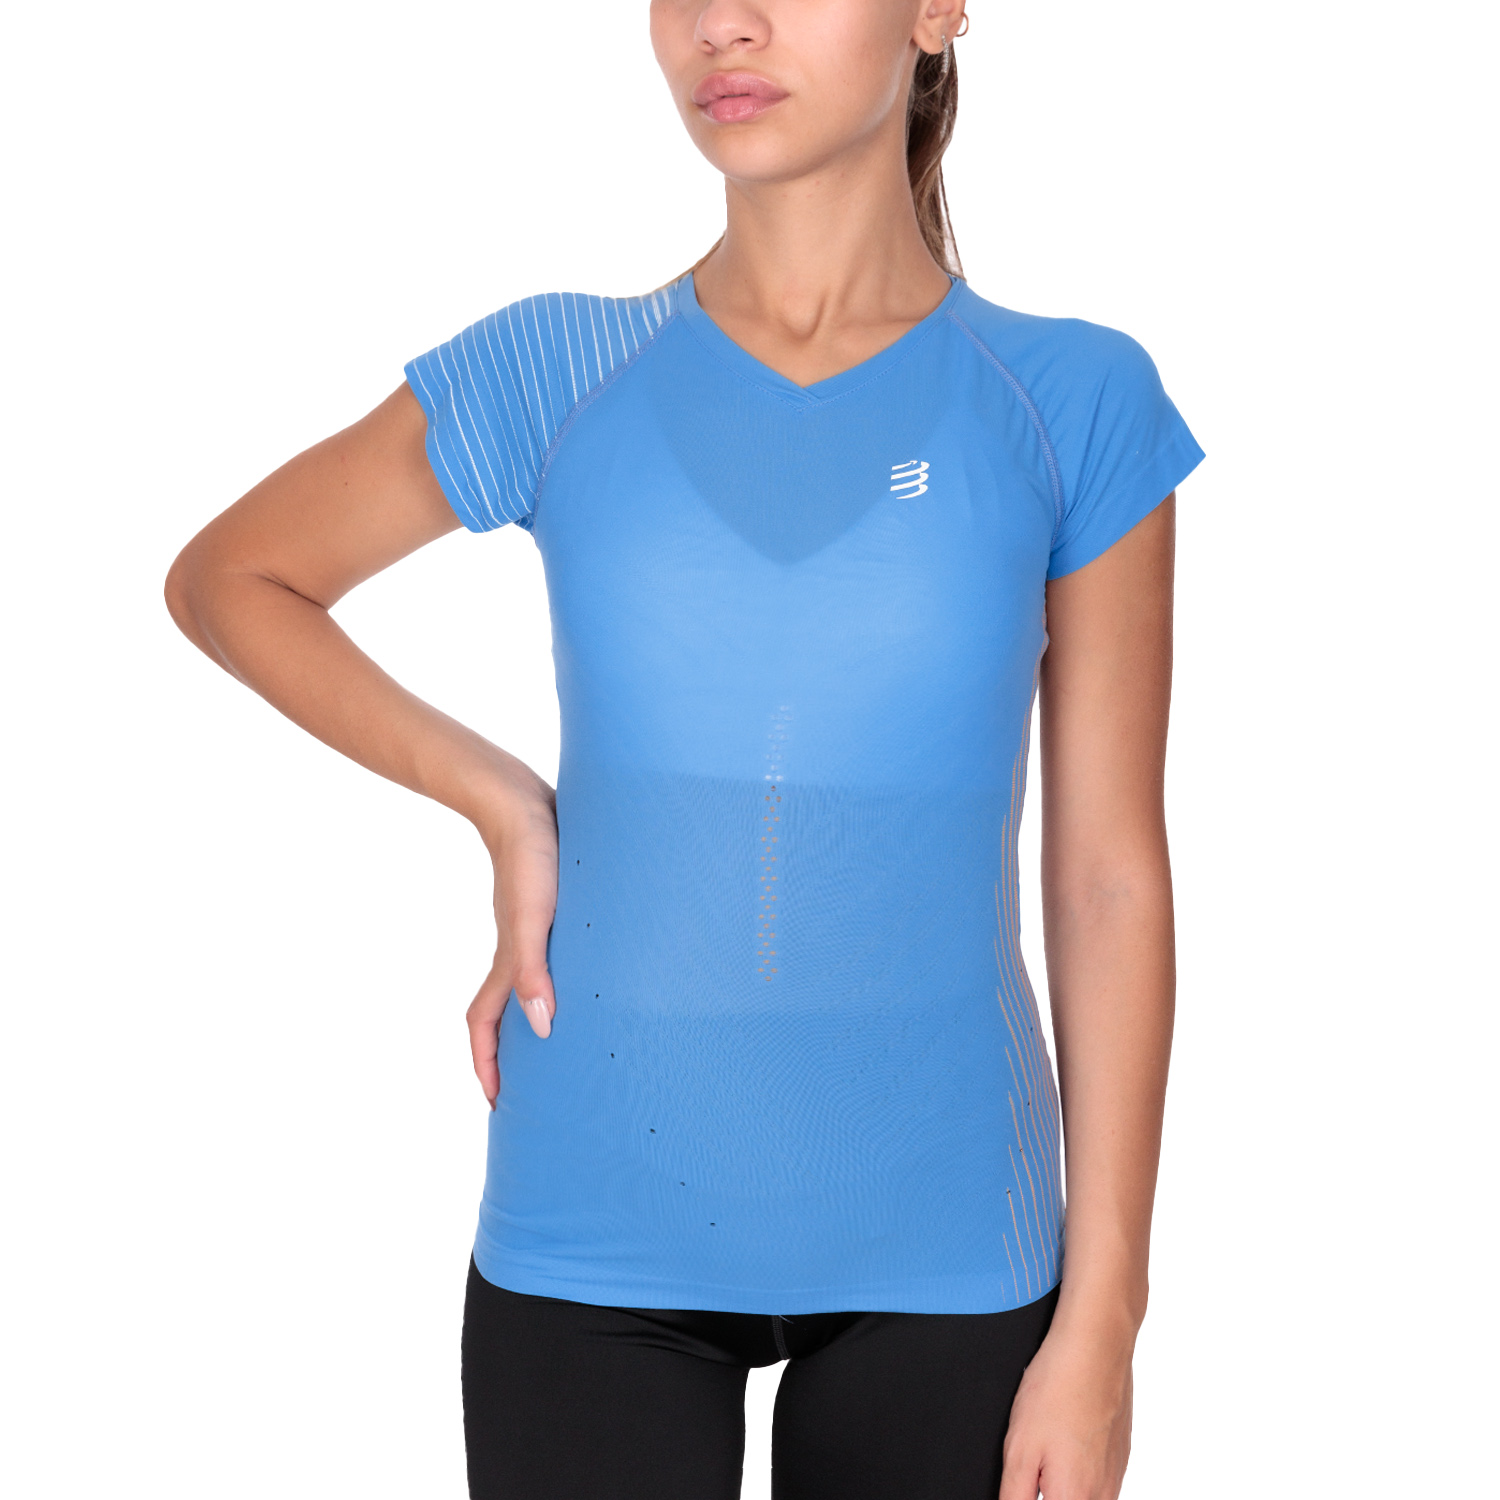 Compressport Performance Women's Running T-Shirt - Pacific Blue